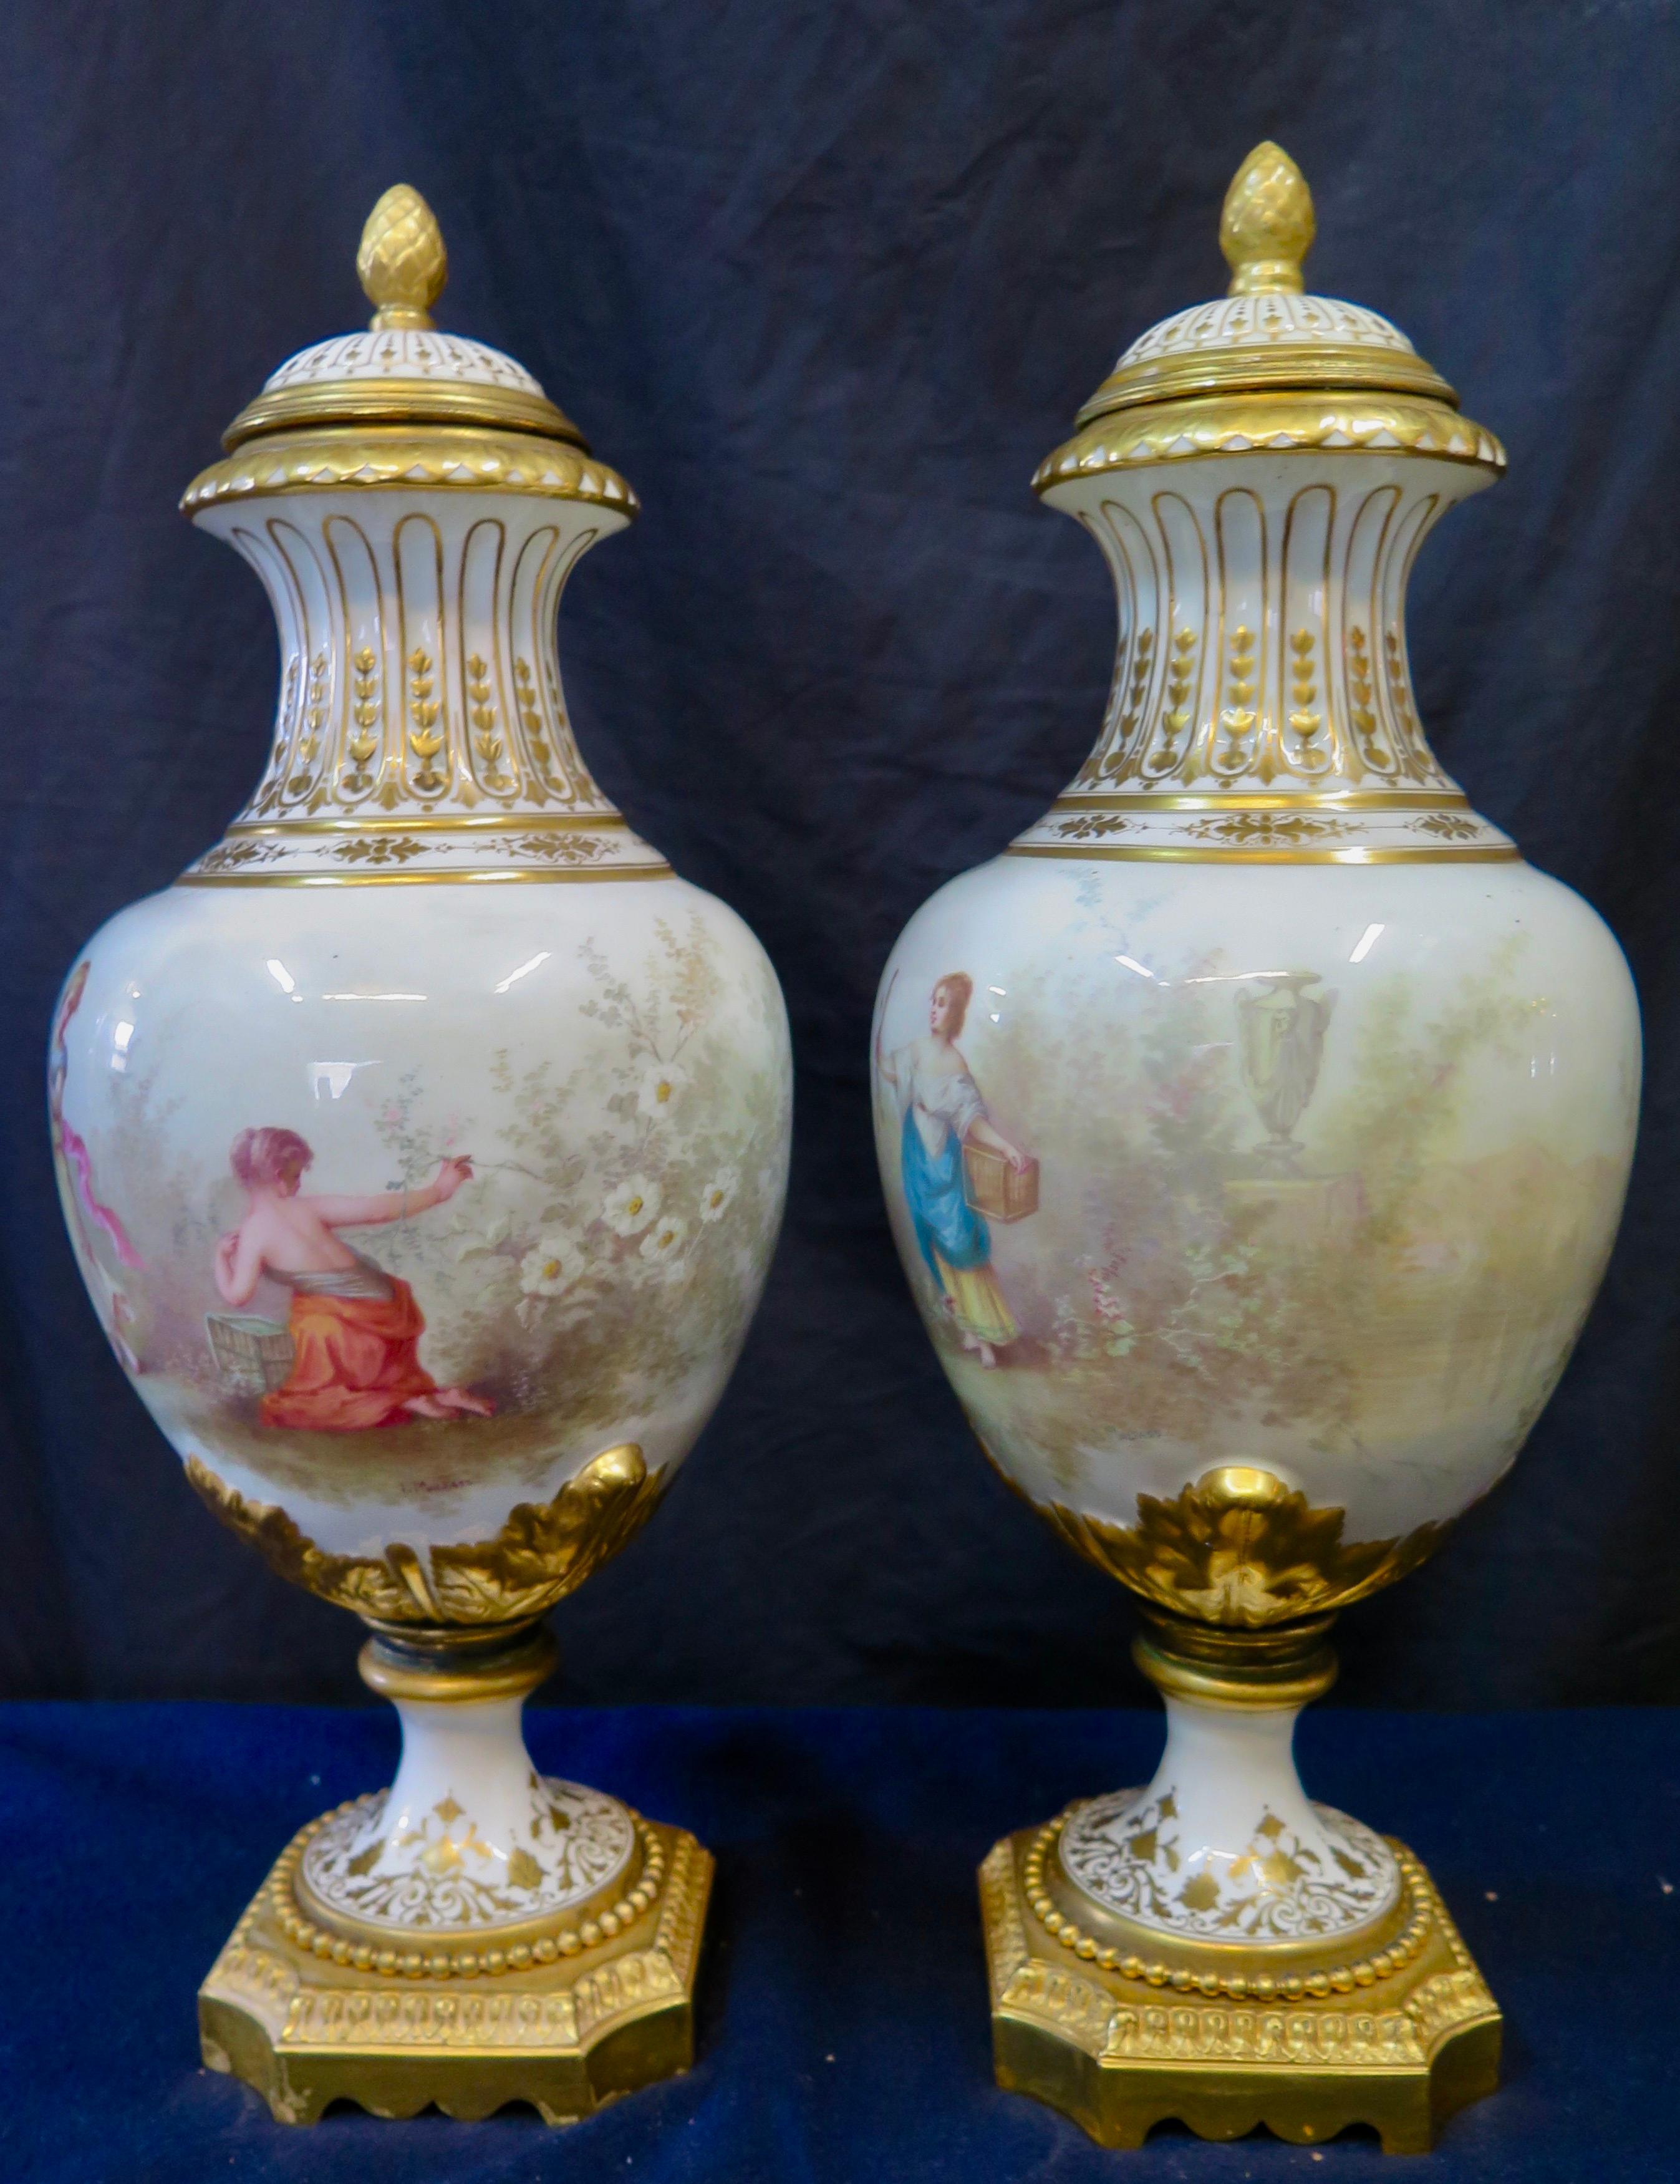 Dieses Paar wunderschöner überdachter Porzellan-Urnen stammt aus der Mitte des 19. Jahrhunderts und wird Sèvres zugeschrieben. Jede Urne ist mit bezaubernden, farbenfrohen, handgemalten Szenen von Jungfrauen und kleinen Cherubinen vor einem